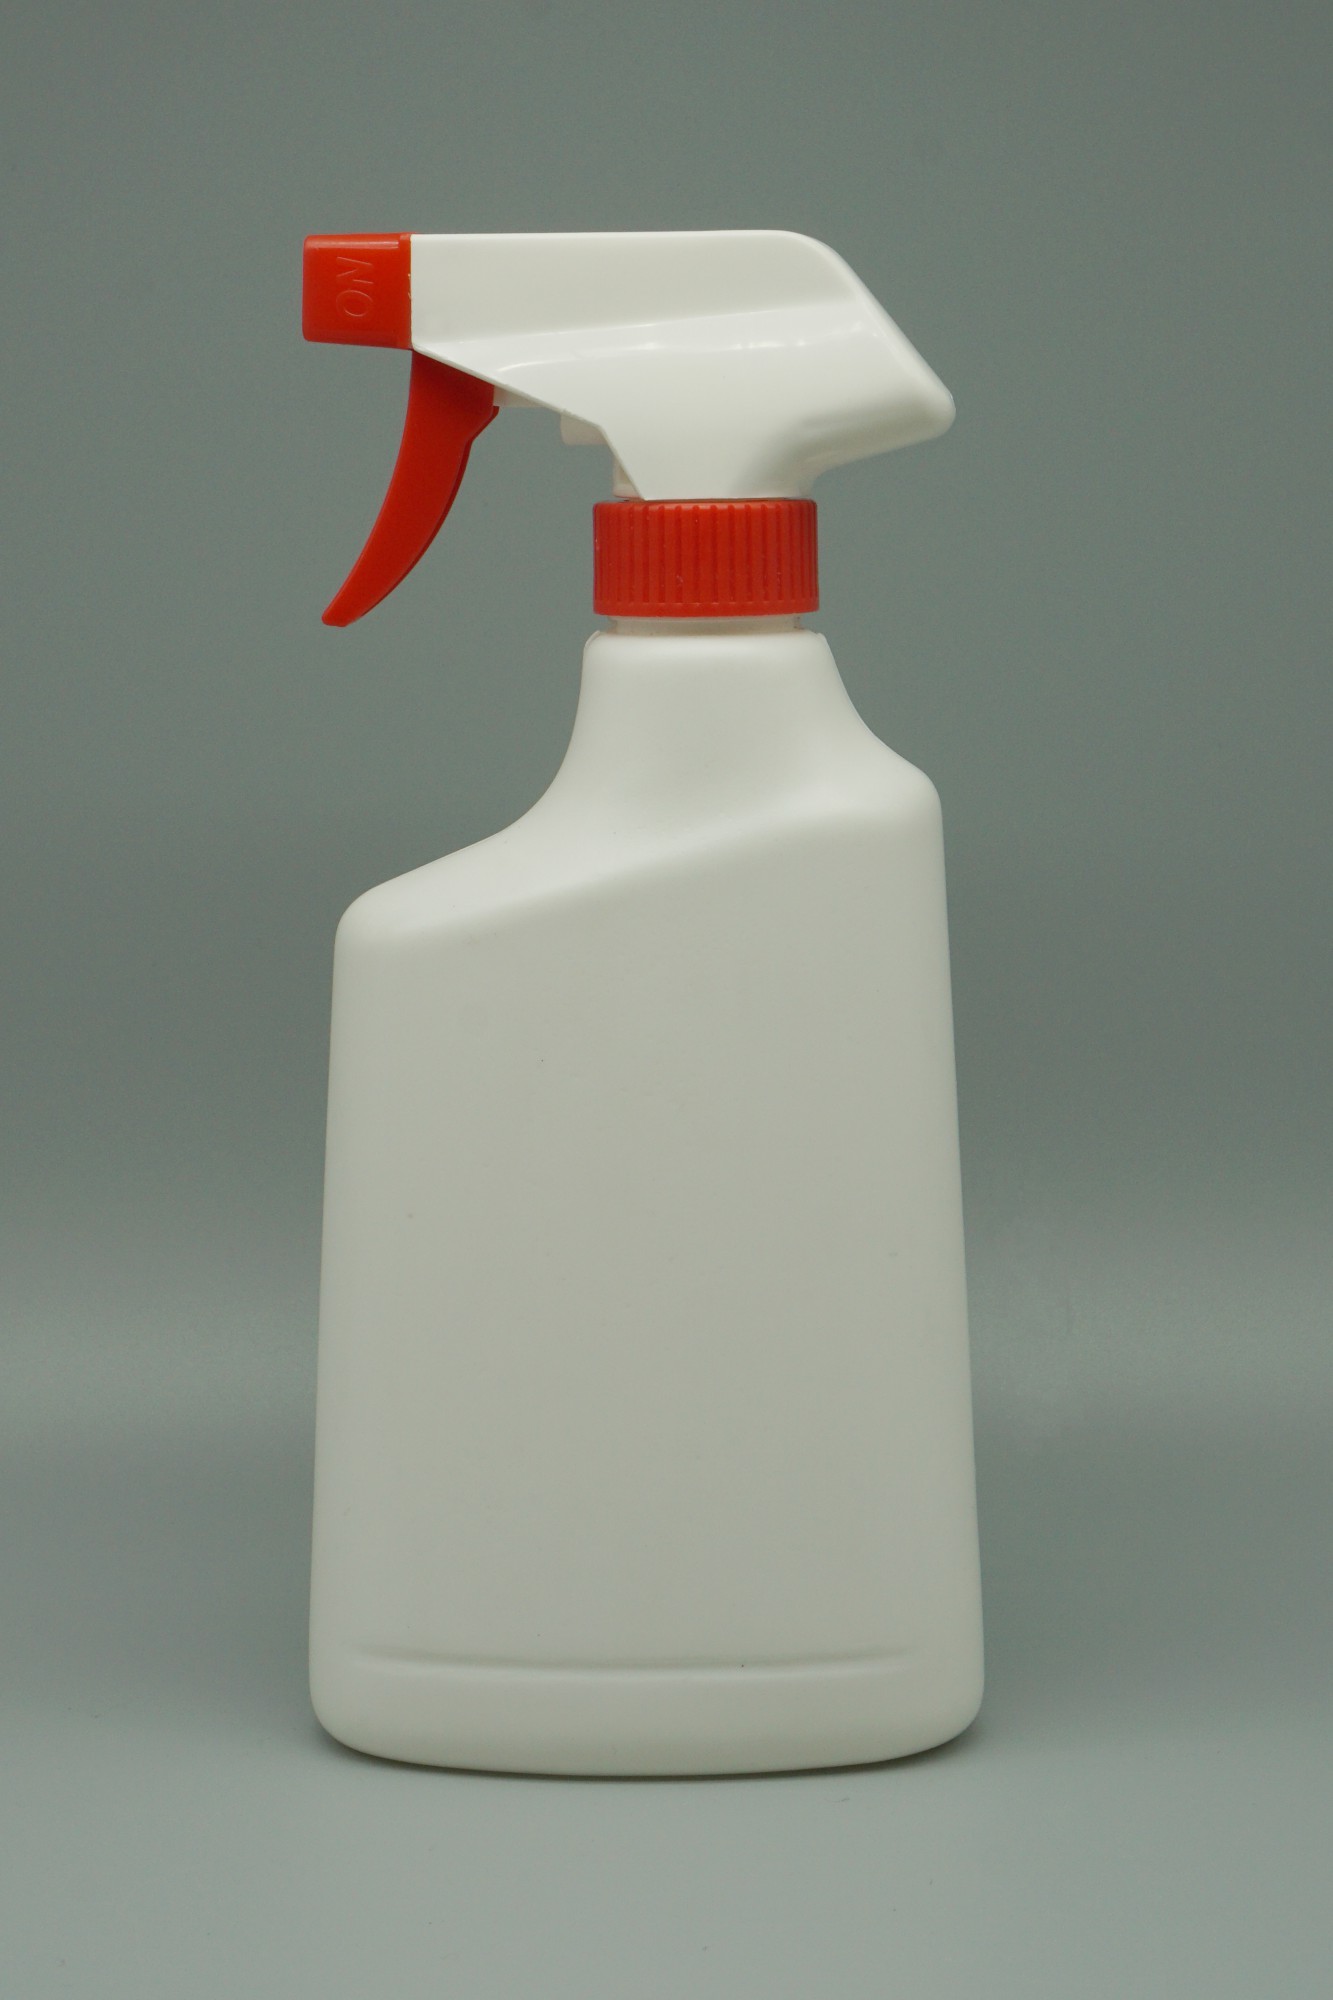 清潔瓶(450mL)(HC003_450)